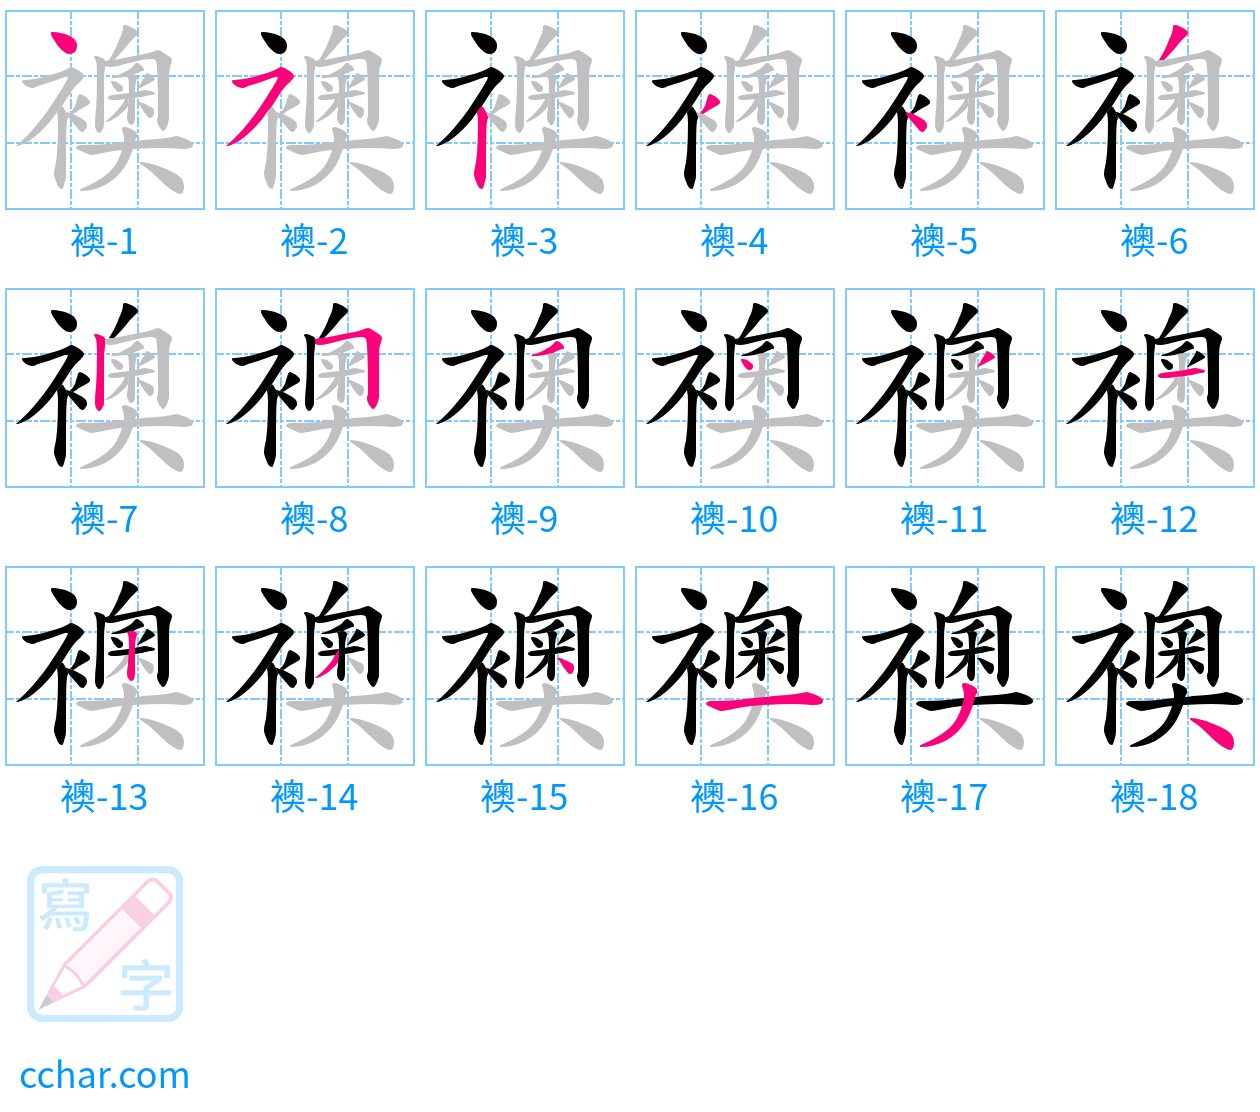 襖 stroke order step-by-step diagram